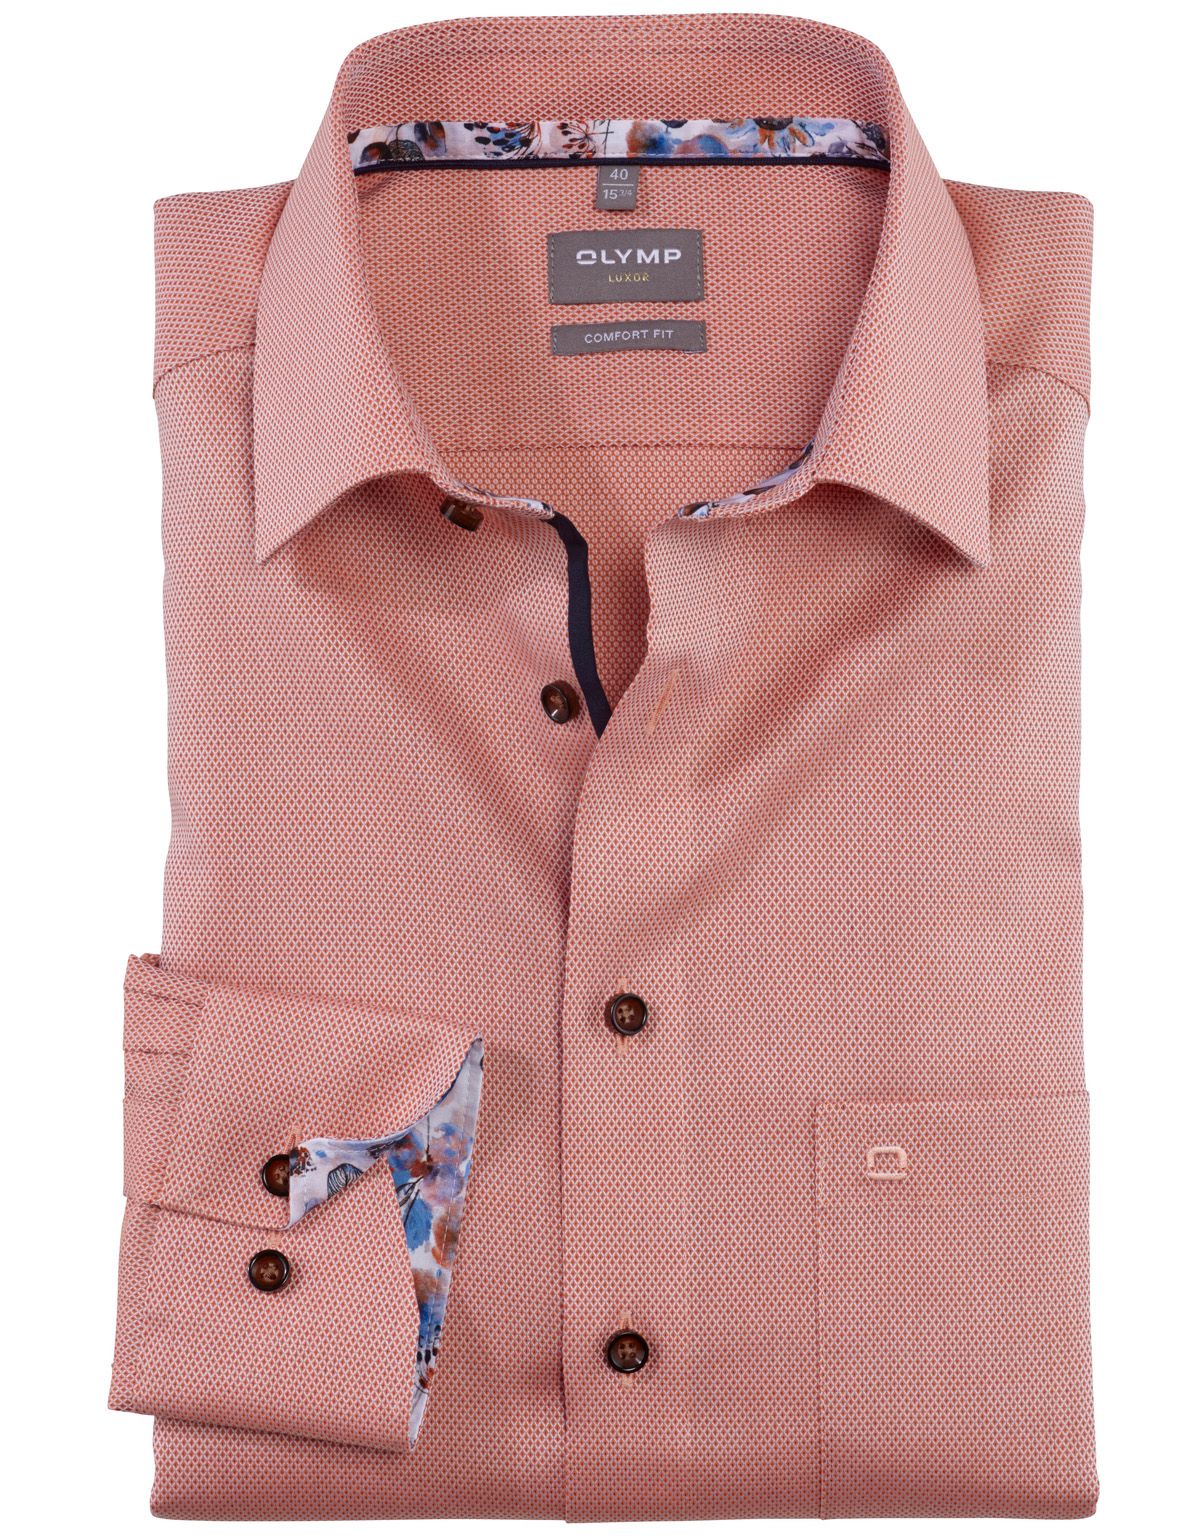 Рубашка классическая мужская OLYMP Luxor, прямая[Оранжевый]